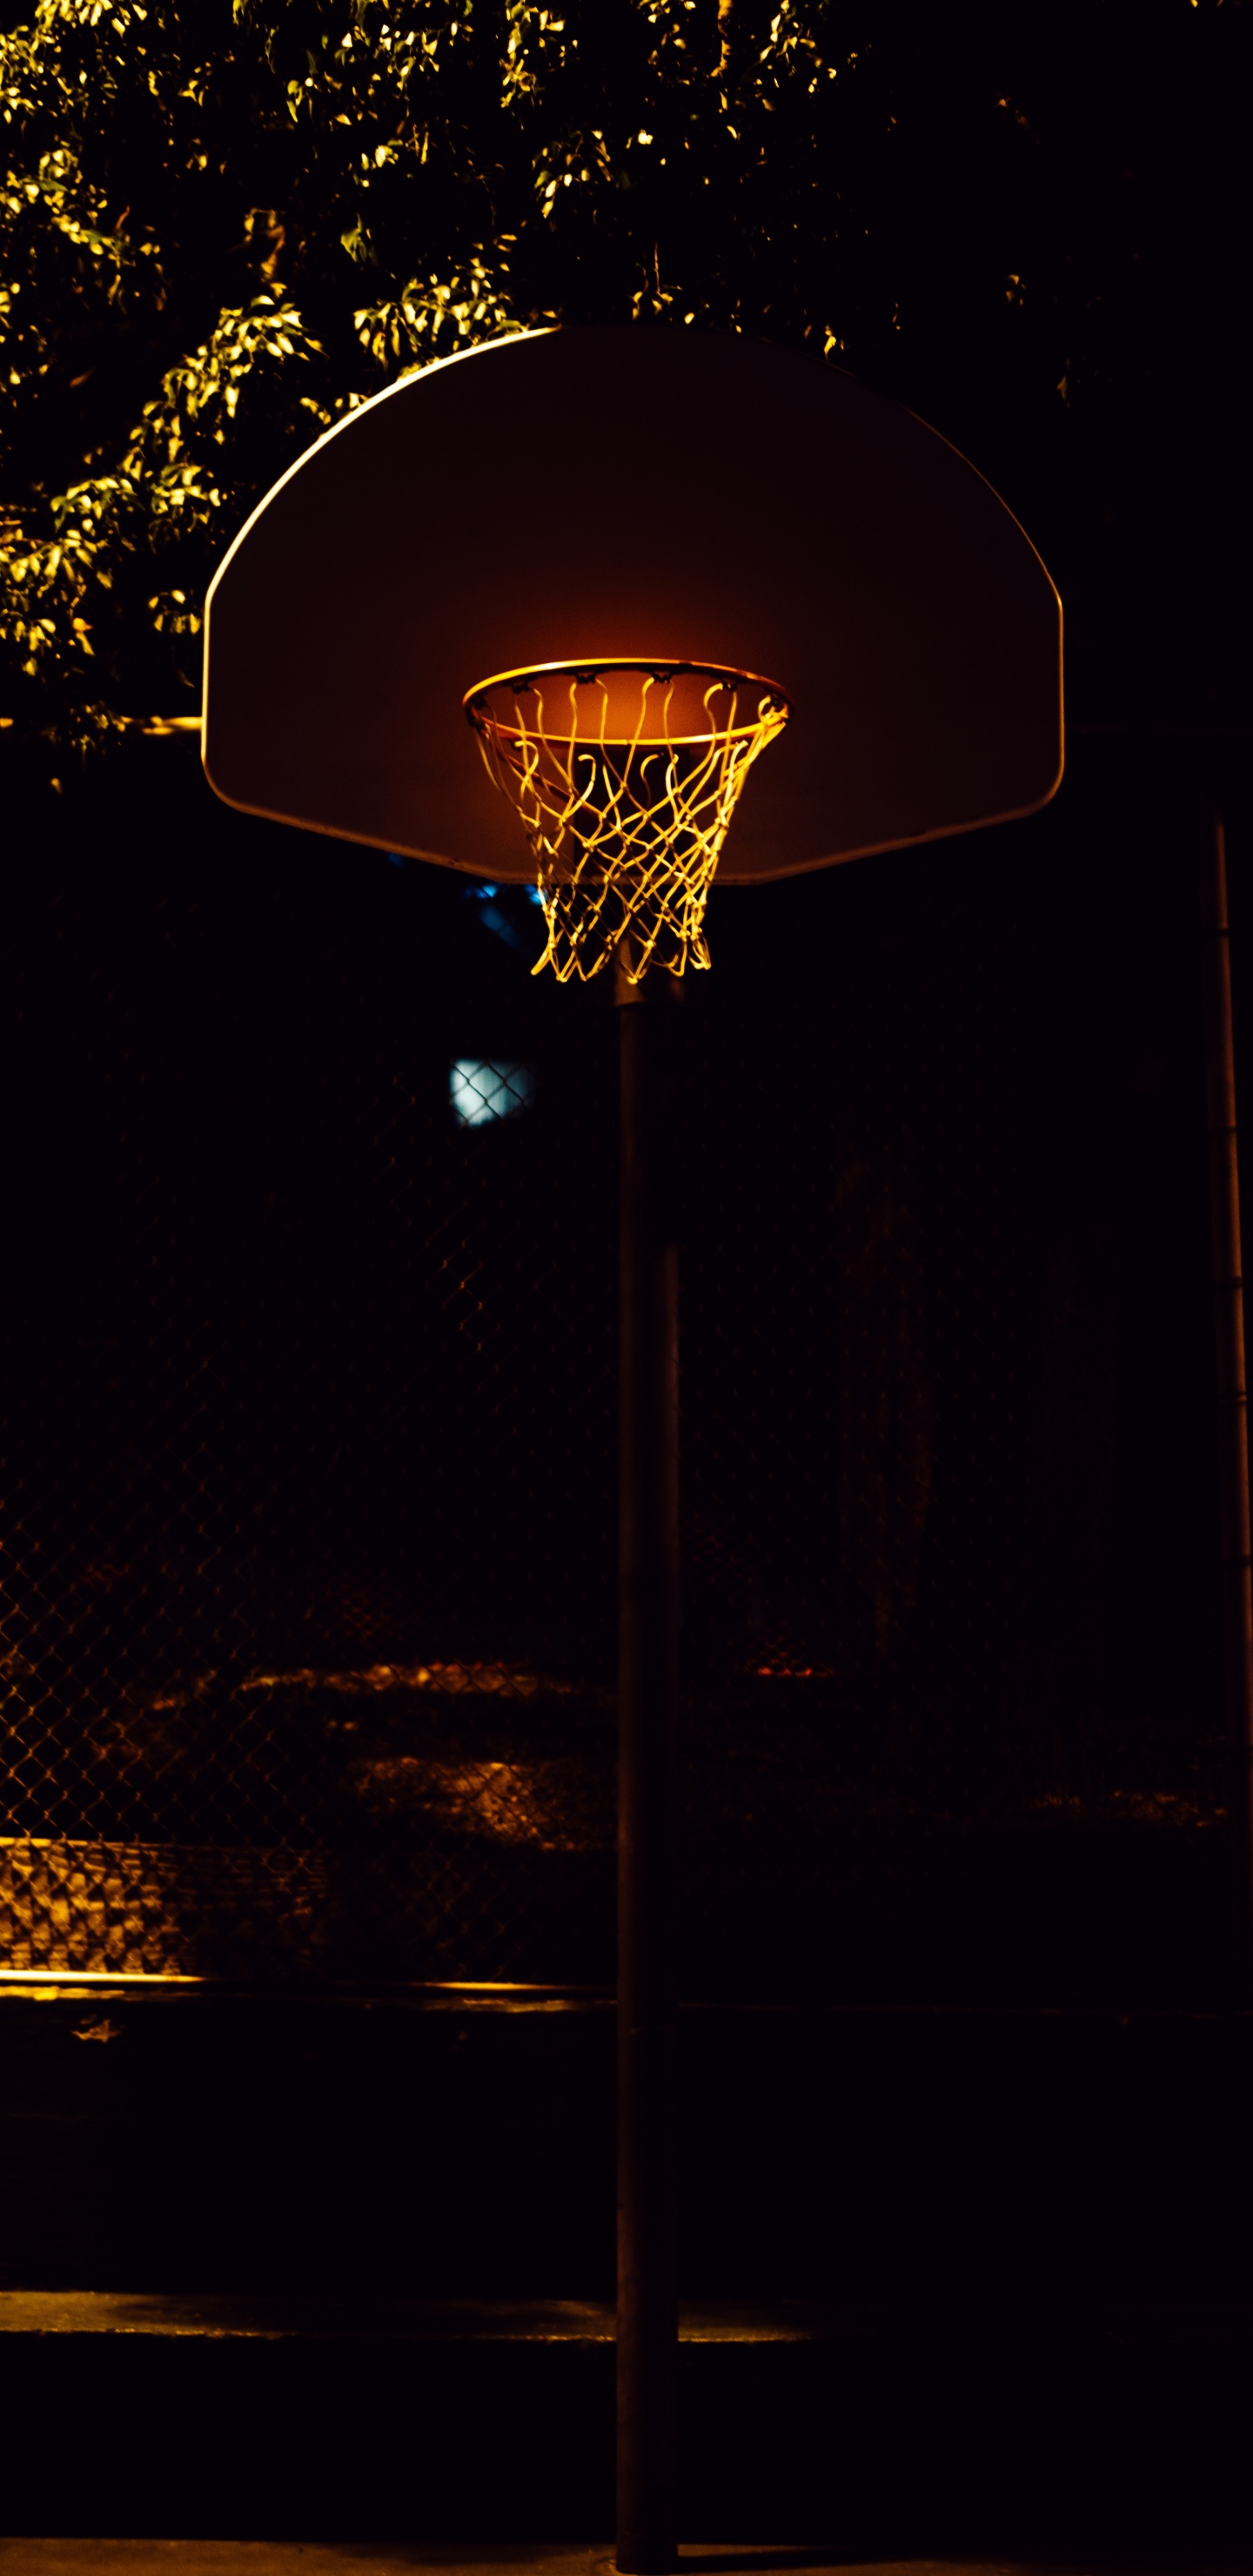 Panier de Basket Avec Lumière Allumée Pendant la Nuit. Wallpaper in 1440x2960 Resolution